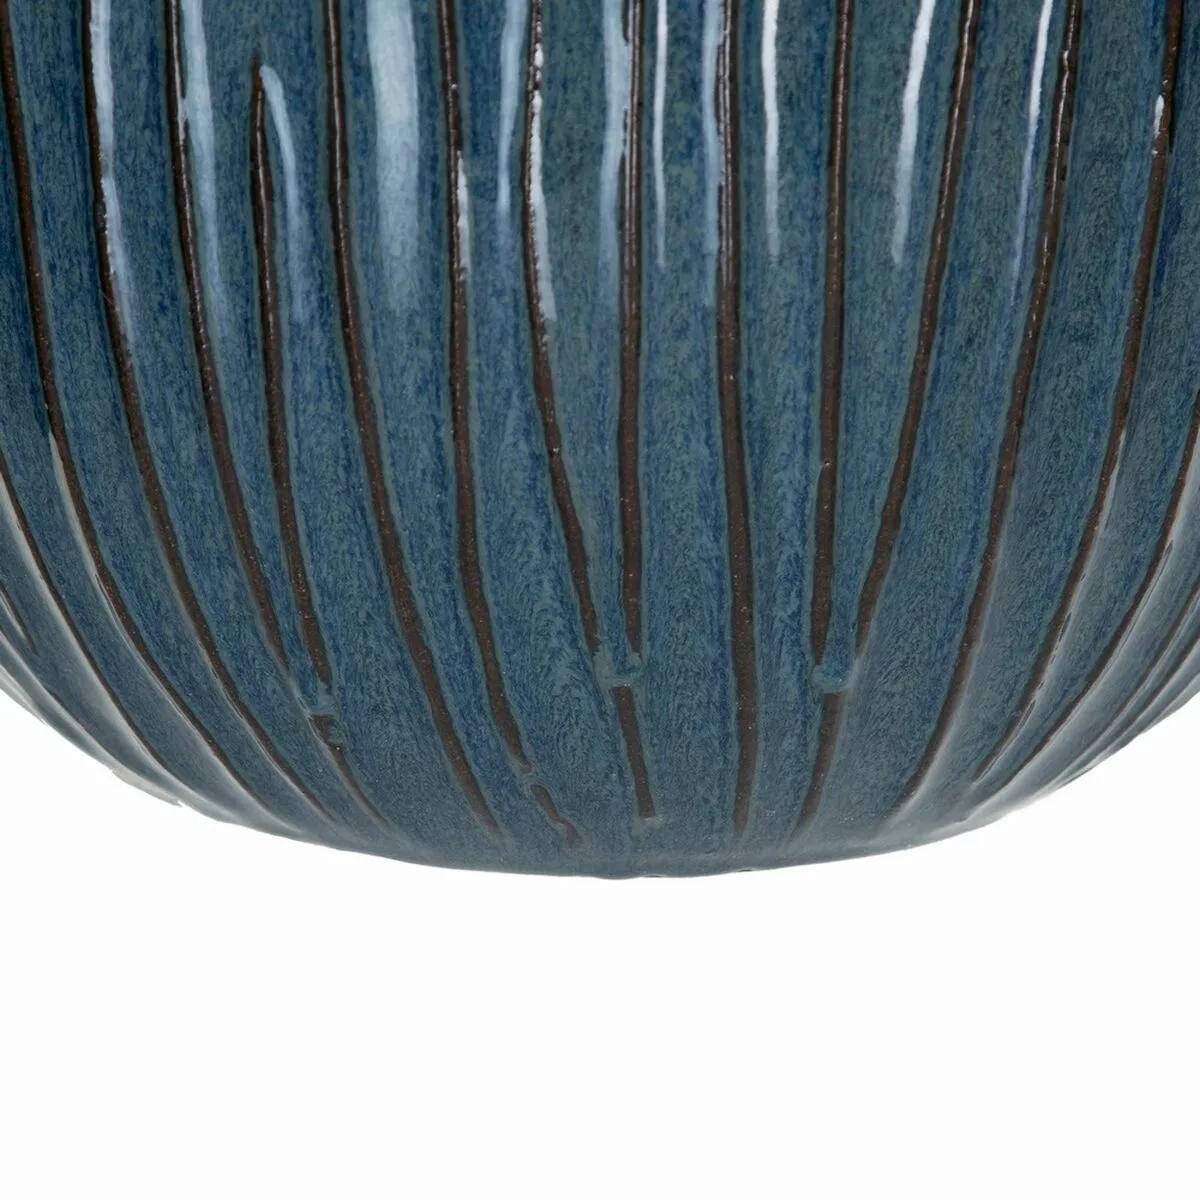 Satz Blumentöpfe 38 X 38 X 35 Cm Aus Keramik Blau (3 Stücke) günstig online kaufen